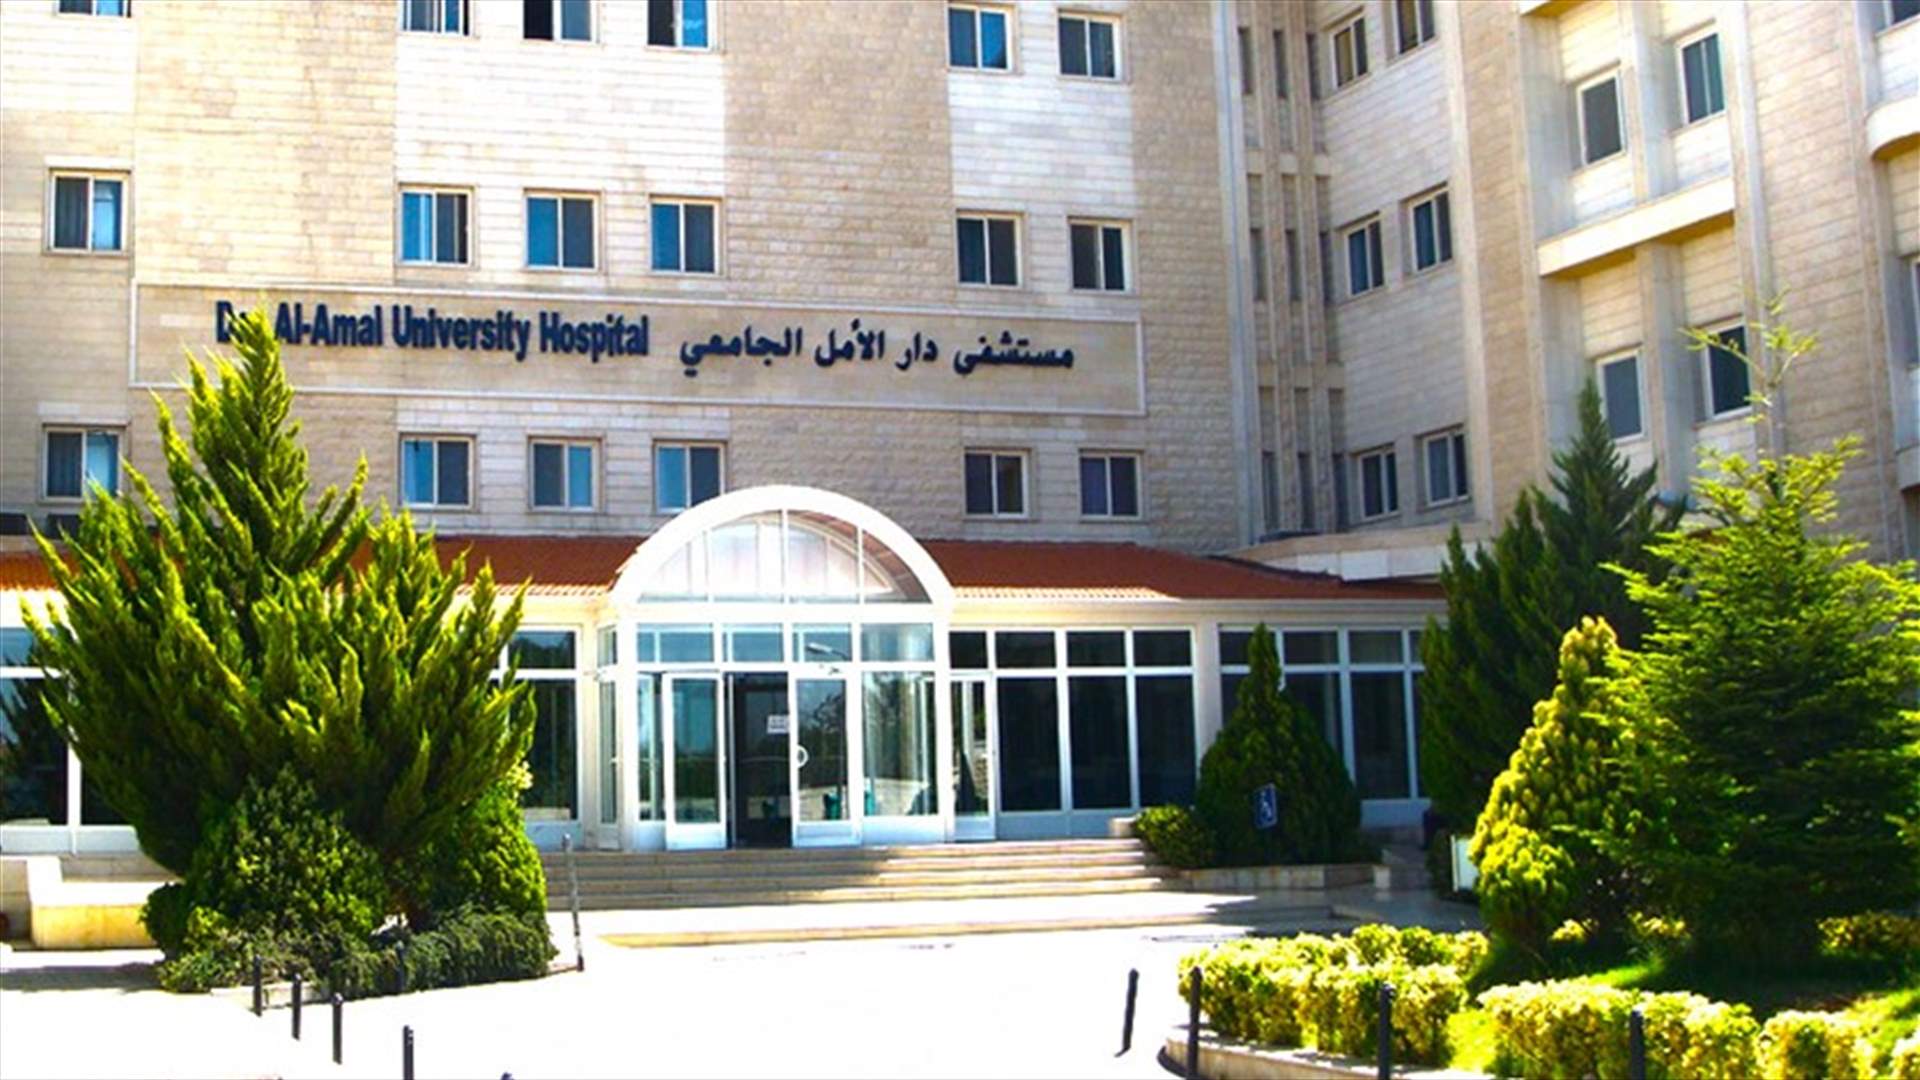 بعد تداول خبر وفاة طفل على باب مستشفى دار الأمل الجامعي... توضيح من إدارة المستشفى